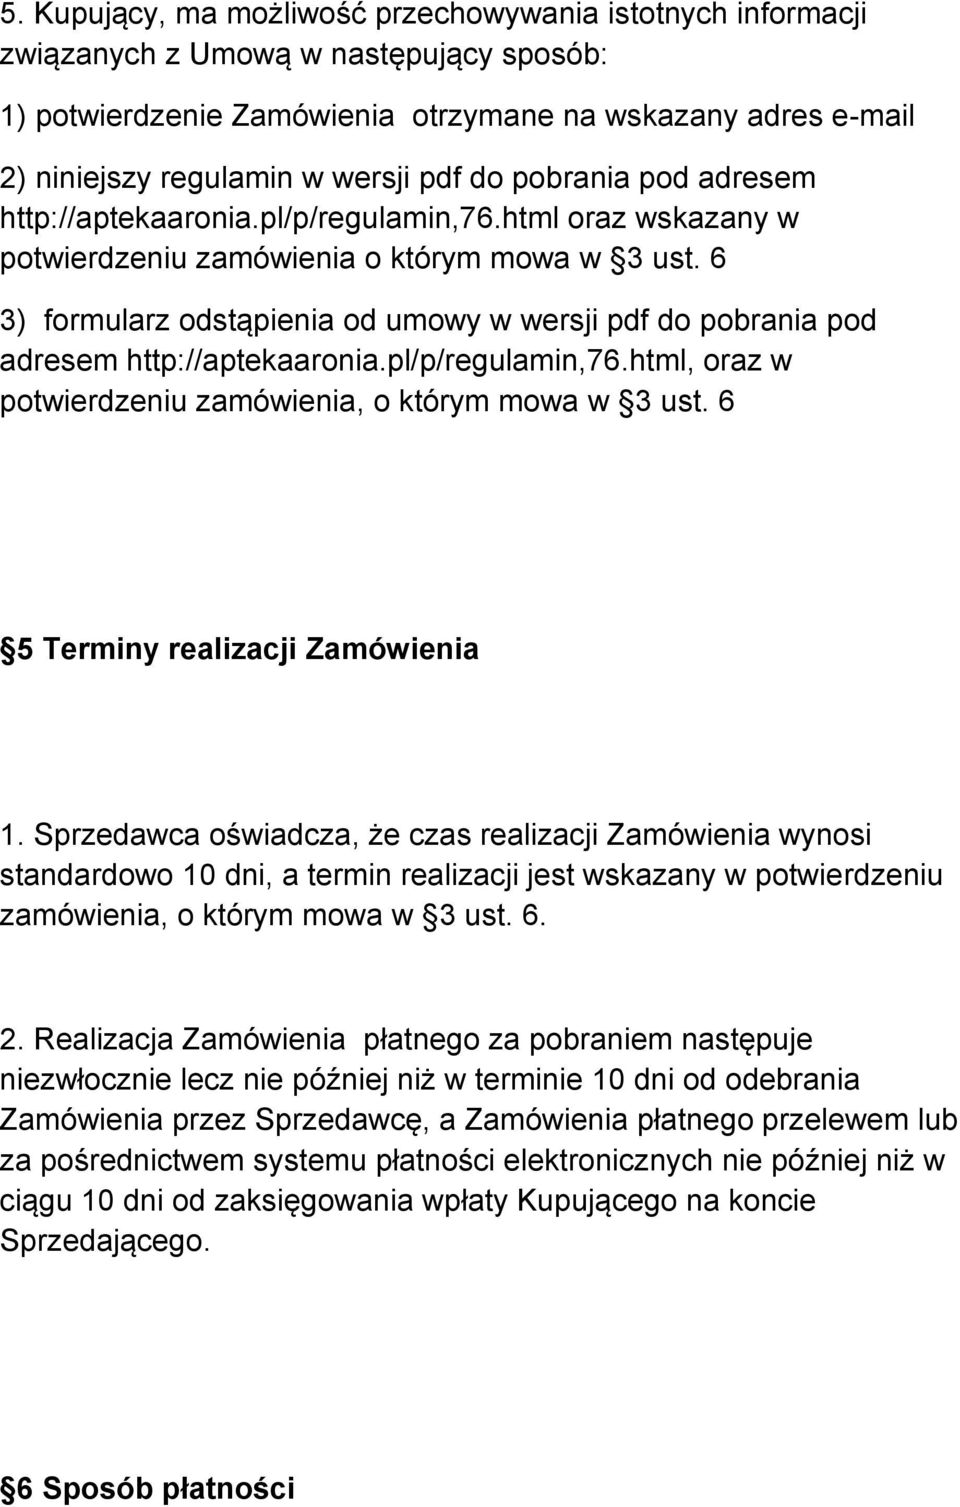 6 3) formularz odstąpienia od umowy w wersji pdf do pobrania pod adresem http://aptekaaronia.pl/p/regulamin,76.html, oraz w potwierdzeniu zamówienia, o którym mowa w 3 ust.